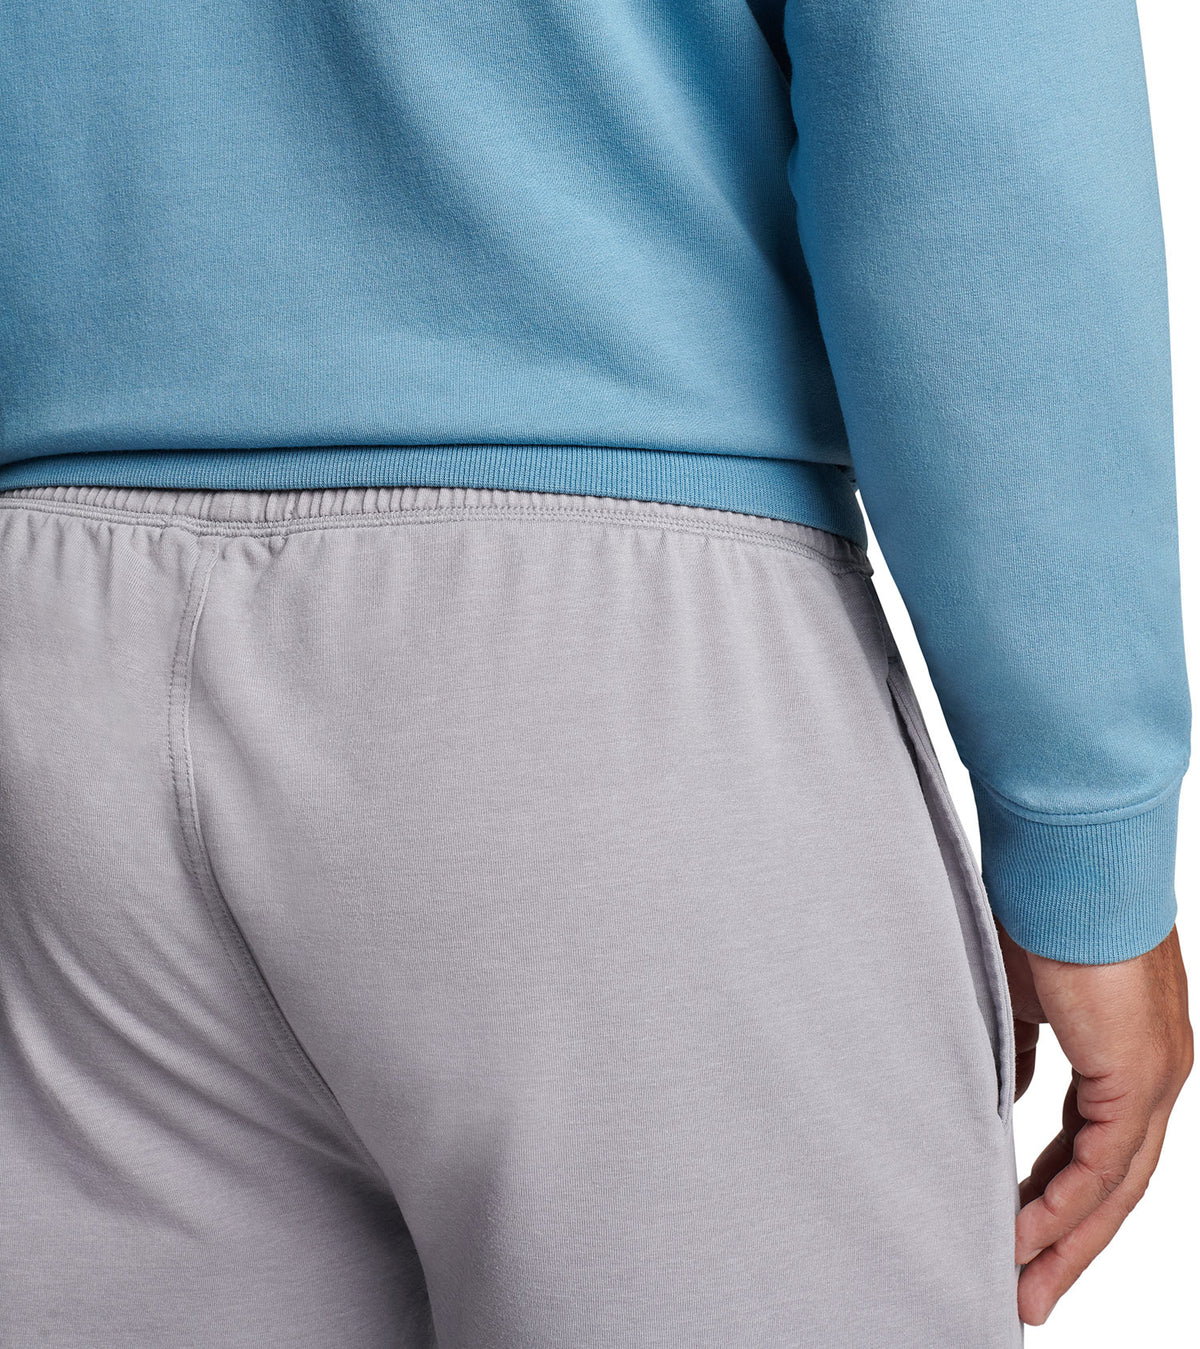 Peter Millar Lava Wash Pull-On Shorts, Big & Tall